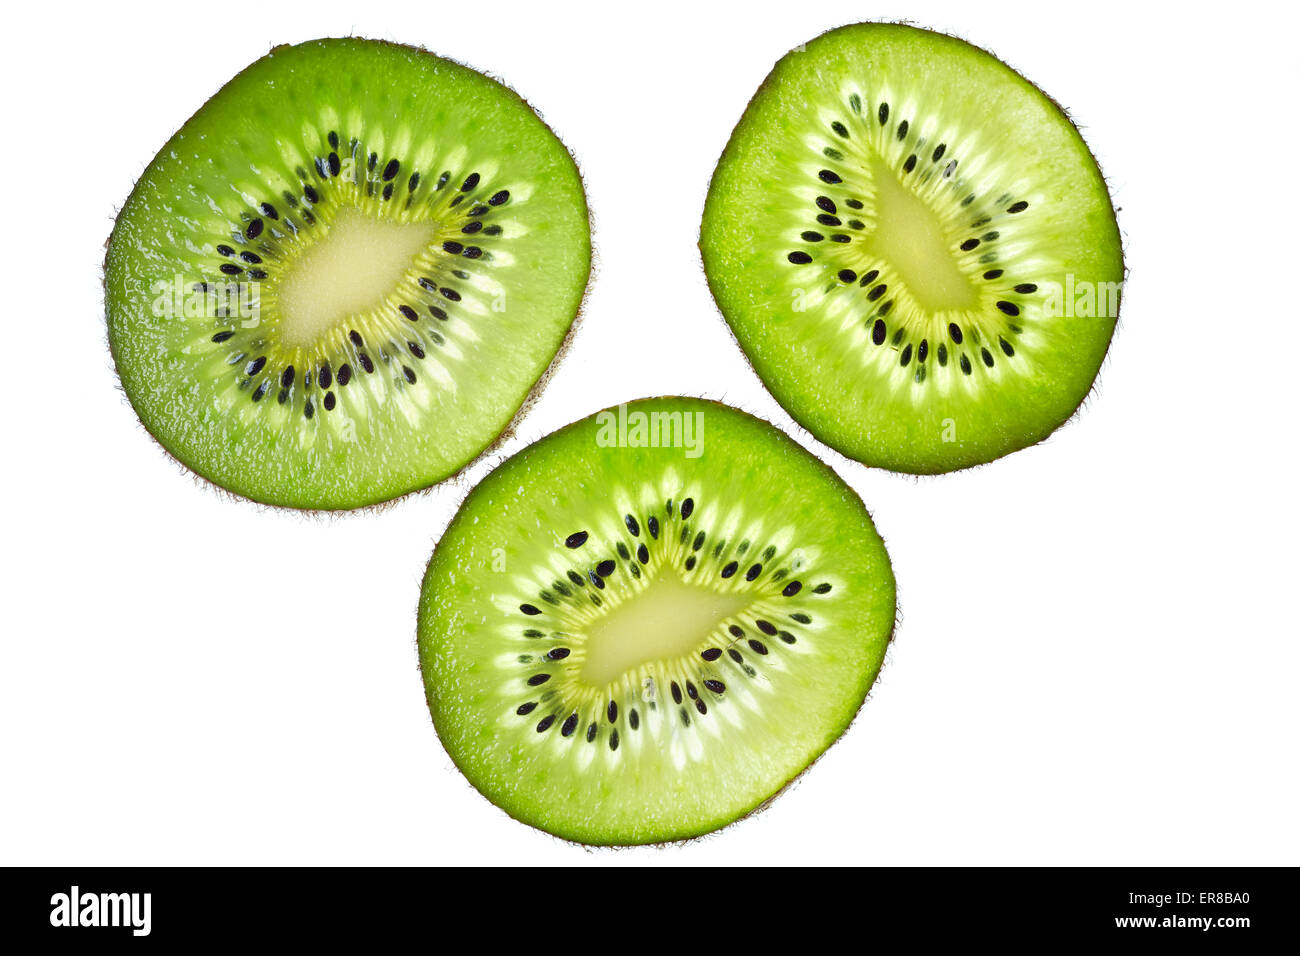 Close up of thin kiwifruit slices on white background. Stock Photo